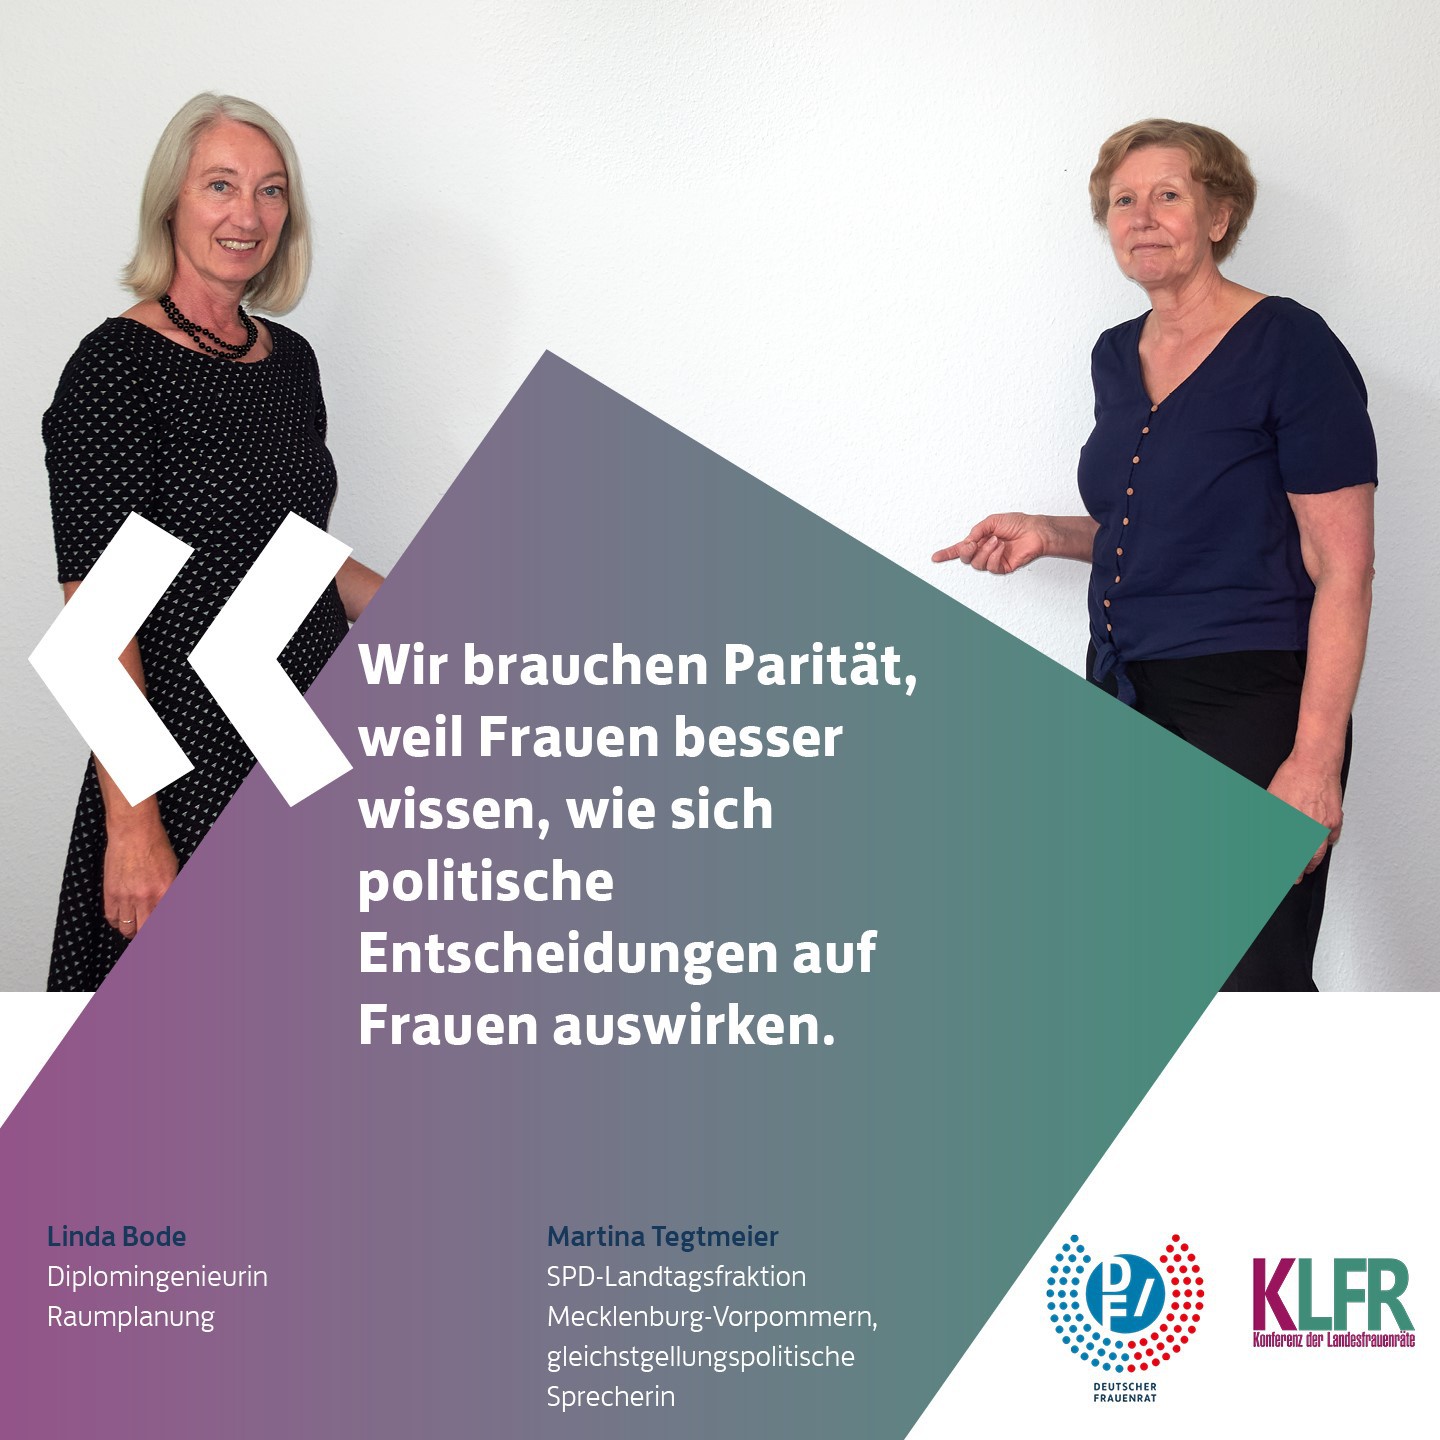 #WirBrauchenParität: Linda Bode und Martina Tegtmeier